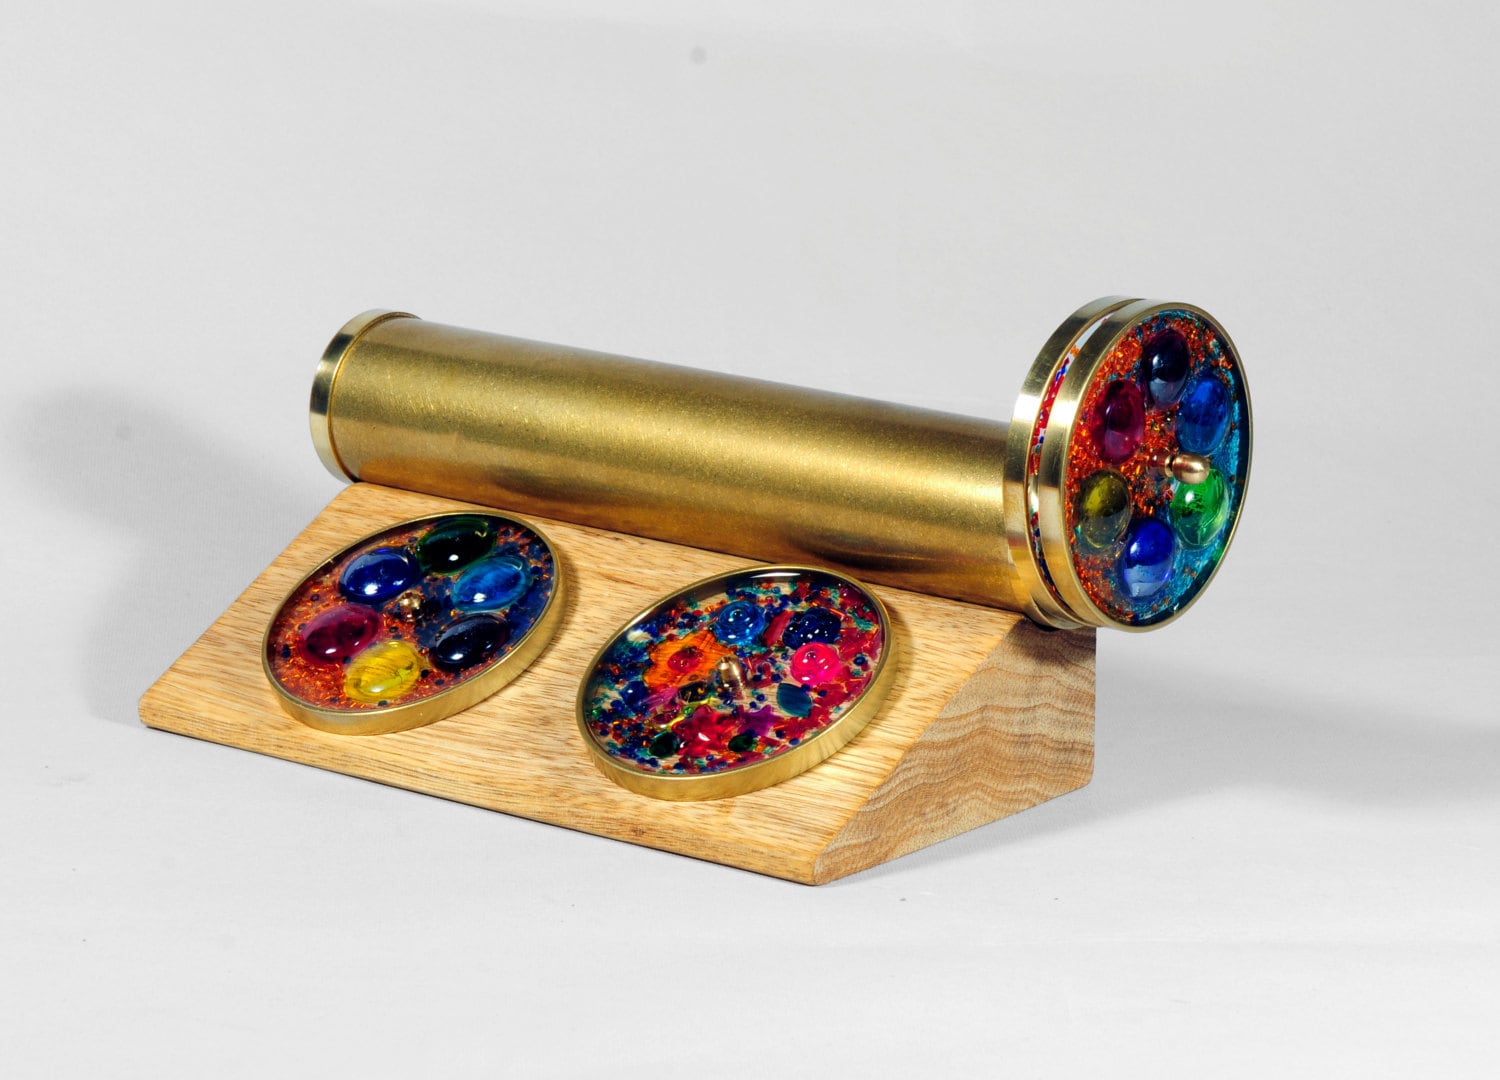 Kaléidoscope 18 cm avec disque rotatif (103g) comme cadeaux